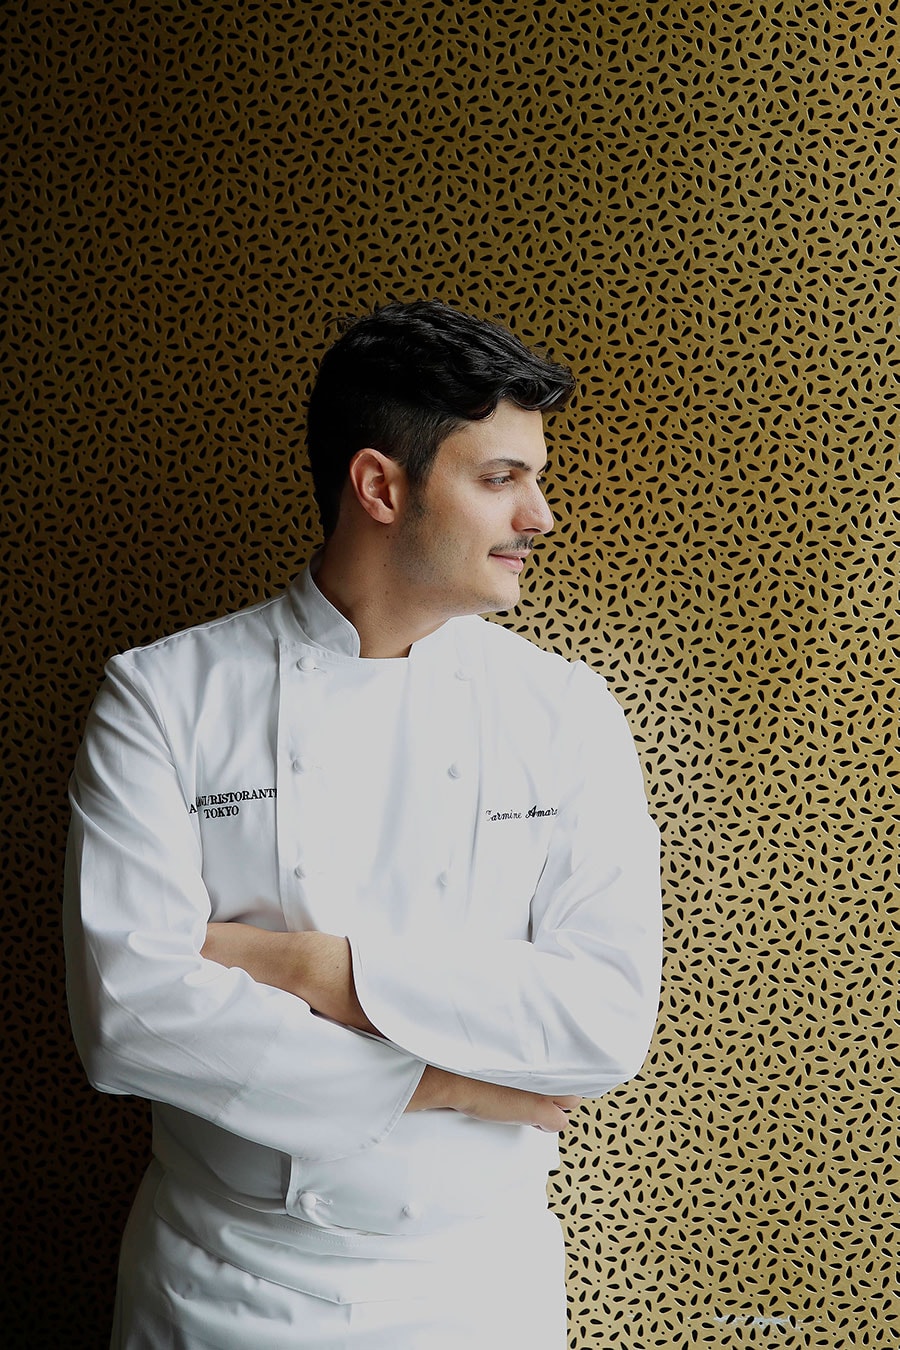 イタリア版ミシュランガイドとも言われる「Gambero Rosso」で最高ランクの3フォークを獲得し世界で1名だけが選出されるThe Chef Of The Yearを受賞。